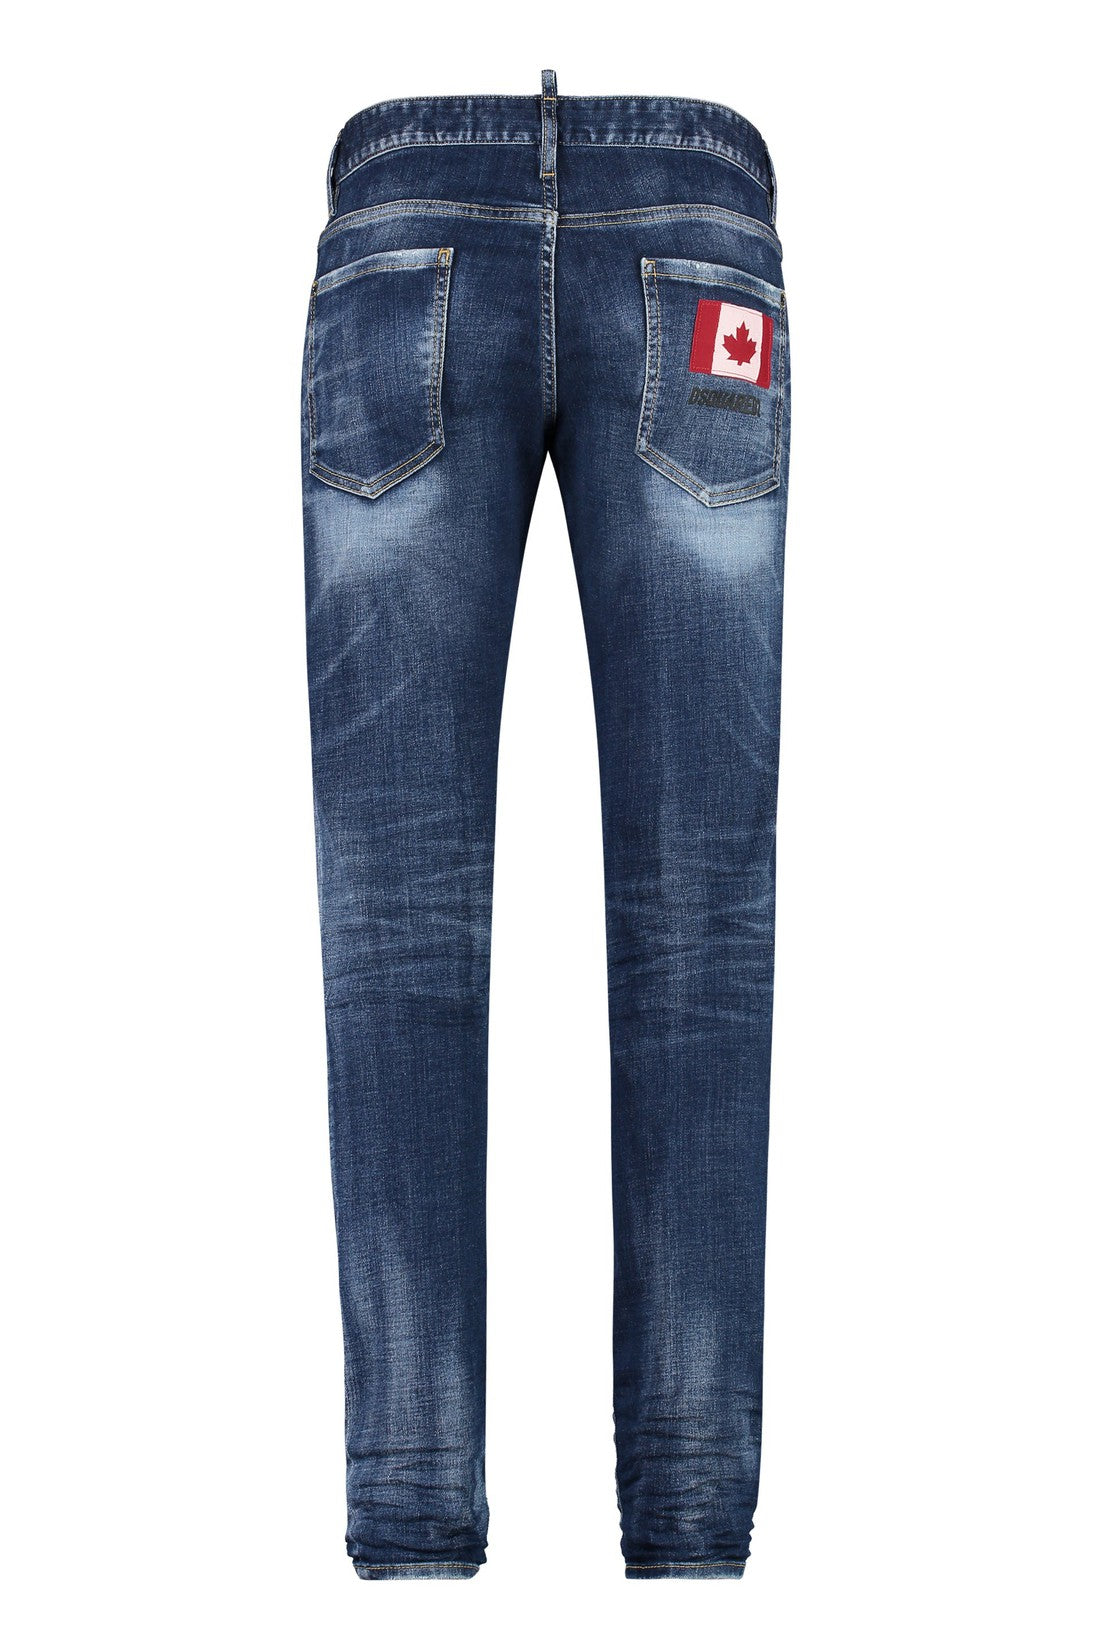 Dsquared2-OUTLET-SALE-Stretch cotton jeans-ARCHIVIST